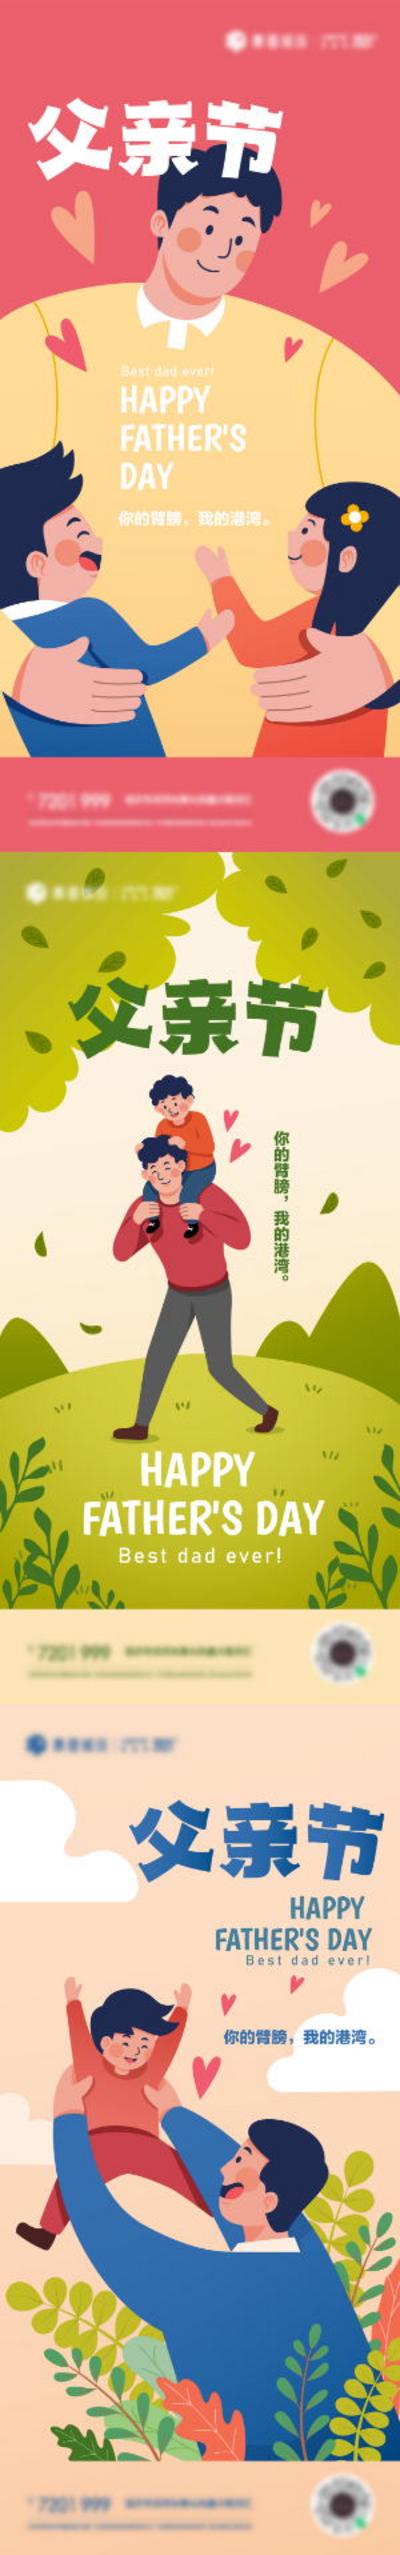 南门网 广告 海报 插画 父亲节 地产 公历节日 可爱 爱心 家人 系列